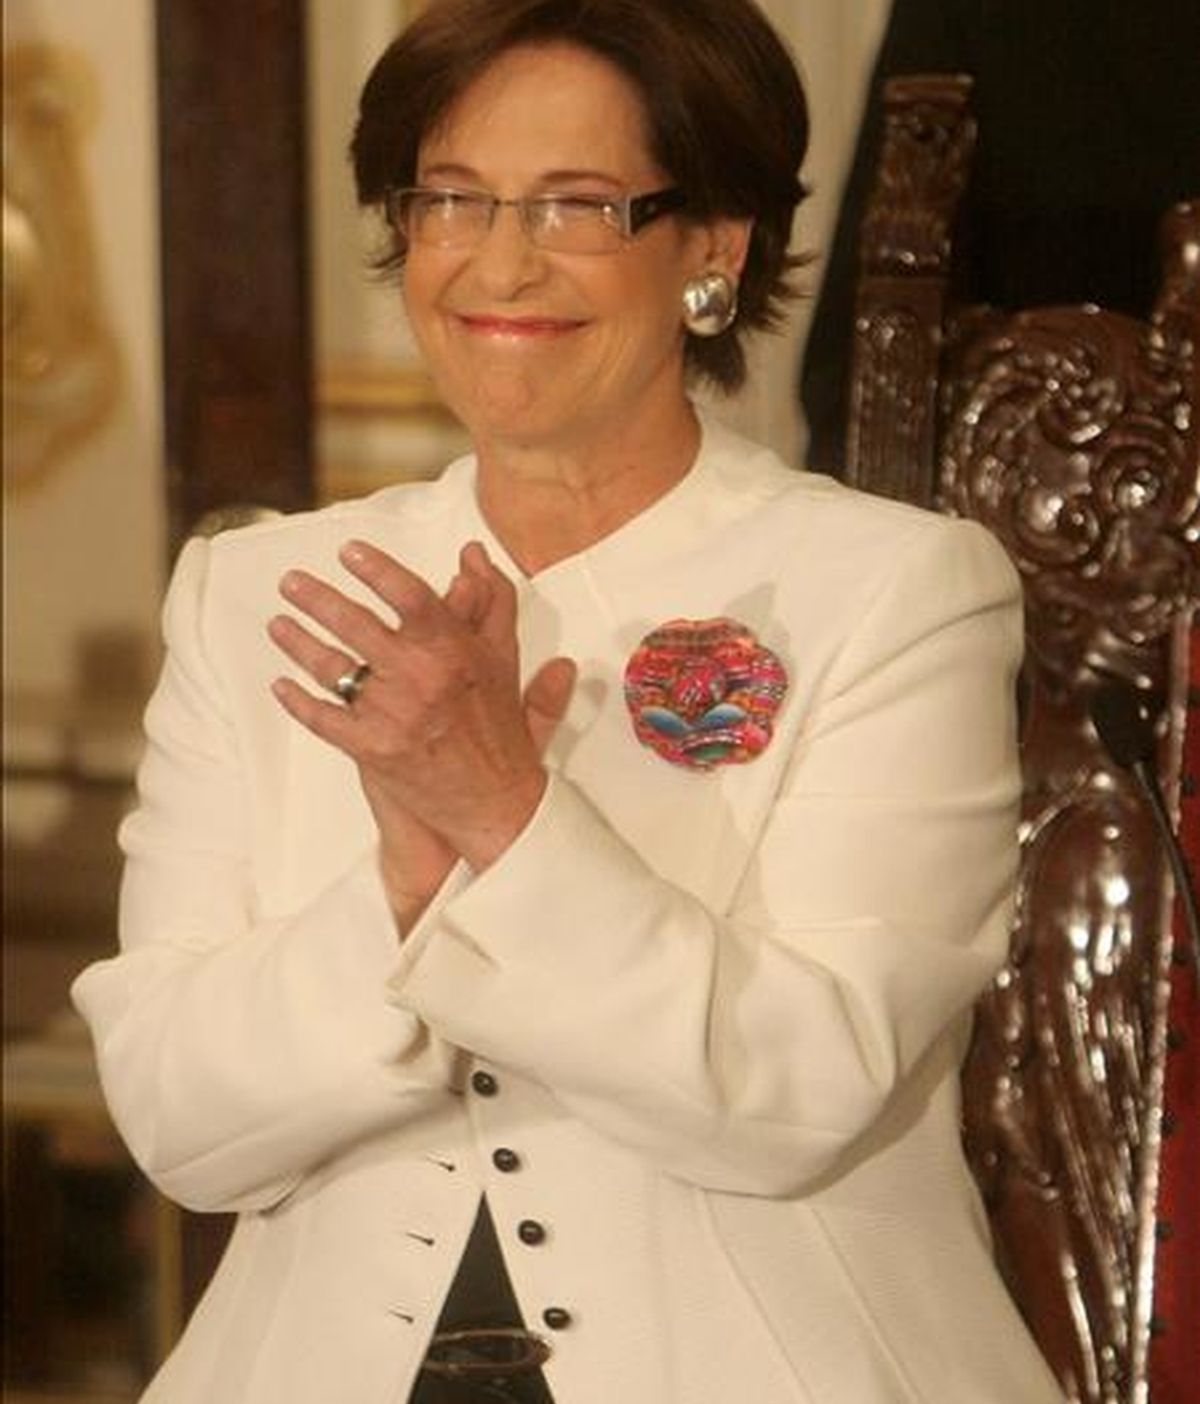 La alcaldesa de la ciudad de Lima, Susana Villarán, jura a su cargo este 3 de enero en el Palacio Municipal en la capital limeña. EFE